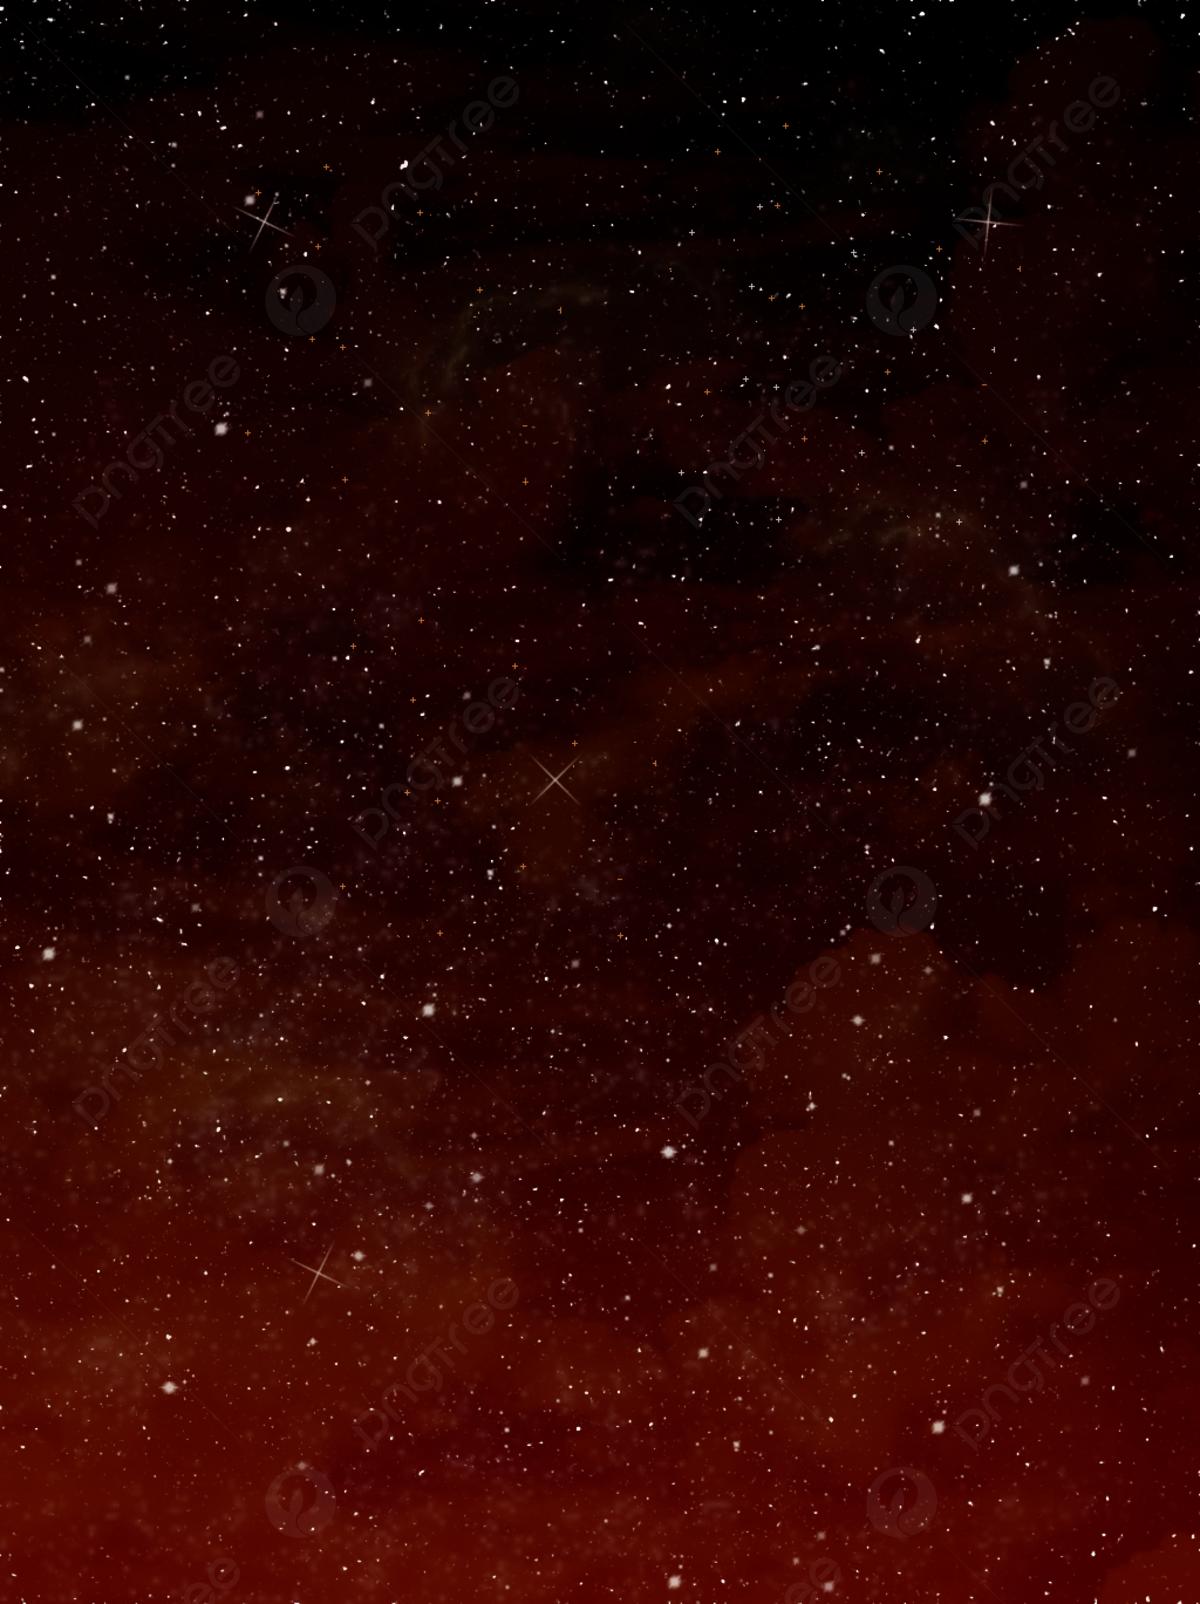 Как тамбовчанам сделать на смартфон красивые фото звёздного неба в августе  | ИА “ОнлайнТамбов.ру”